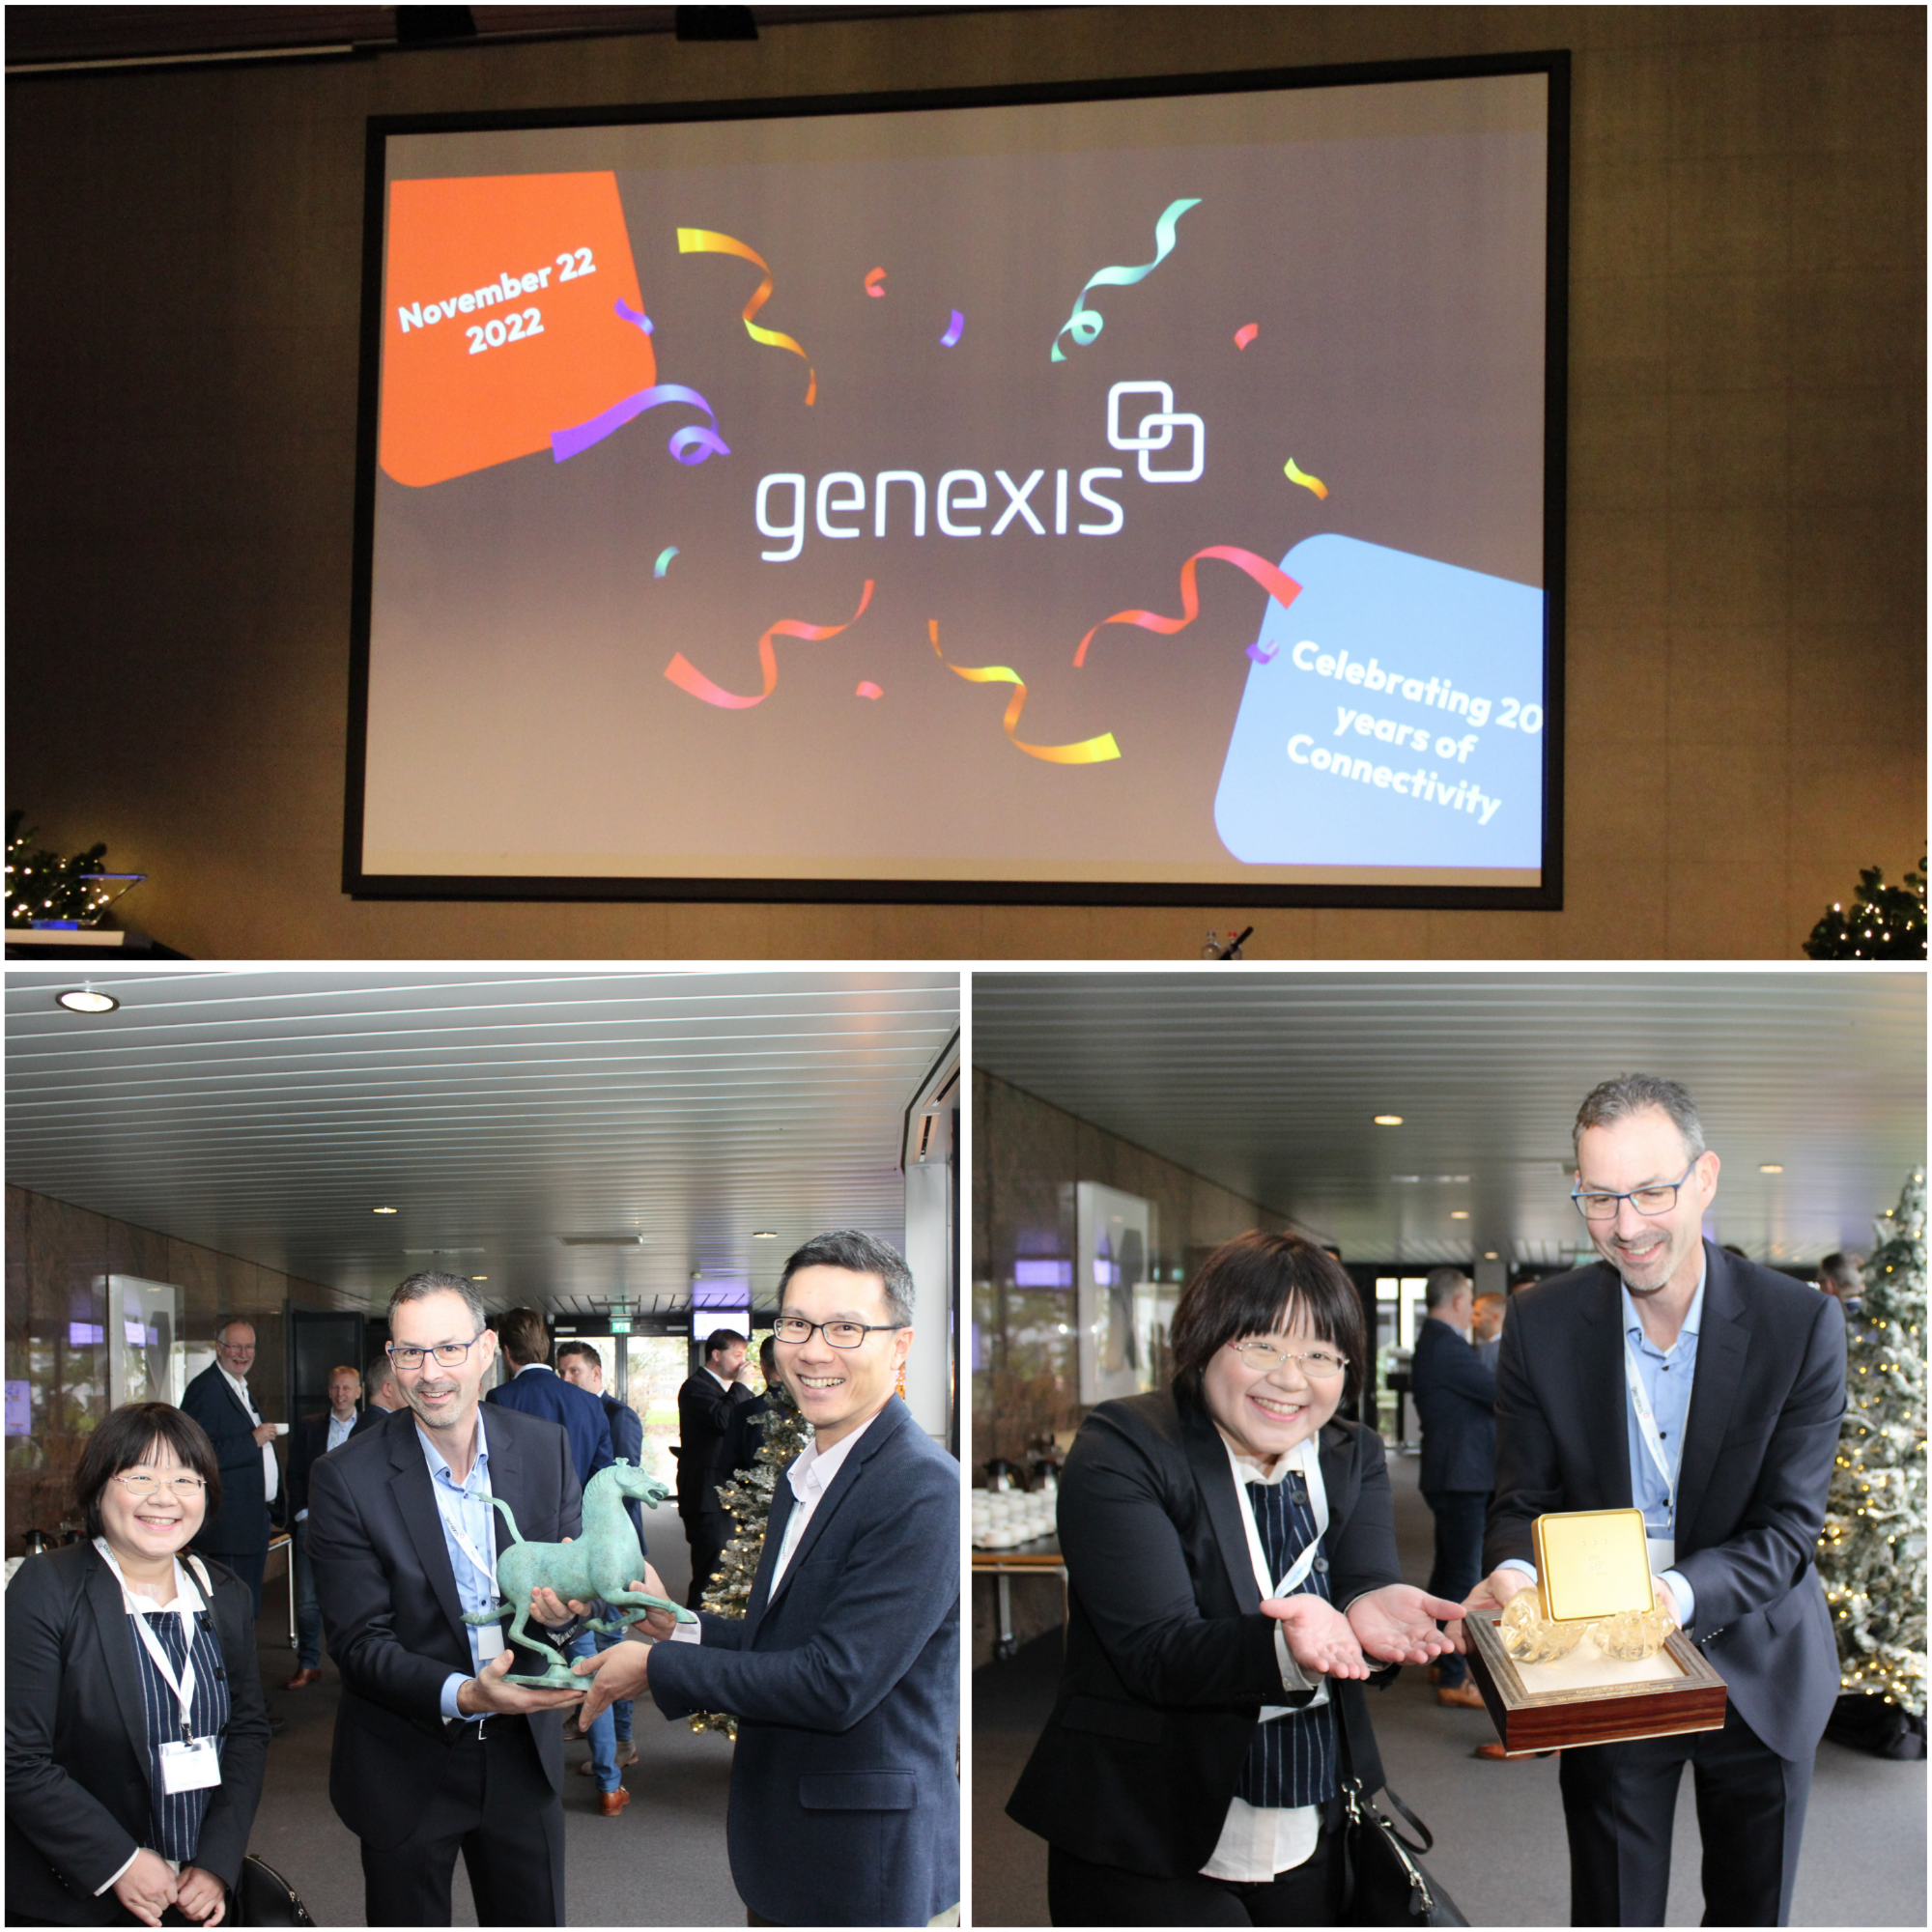 祝賀Genexis20週年快樂！